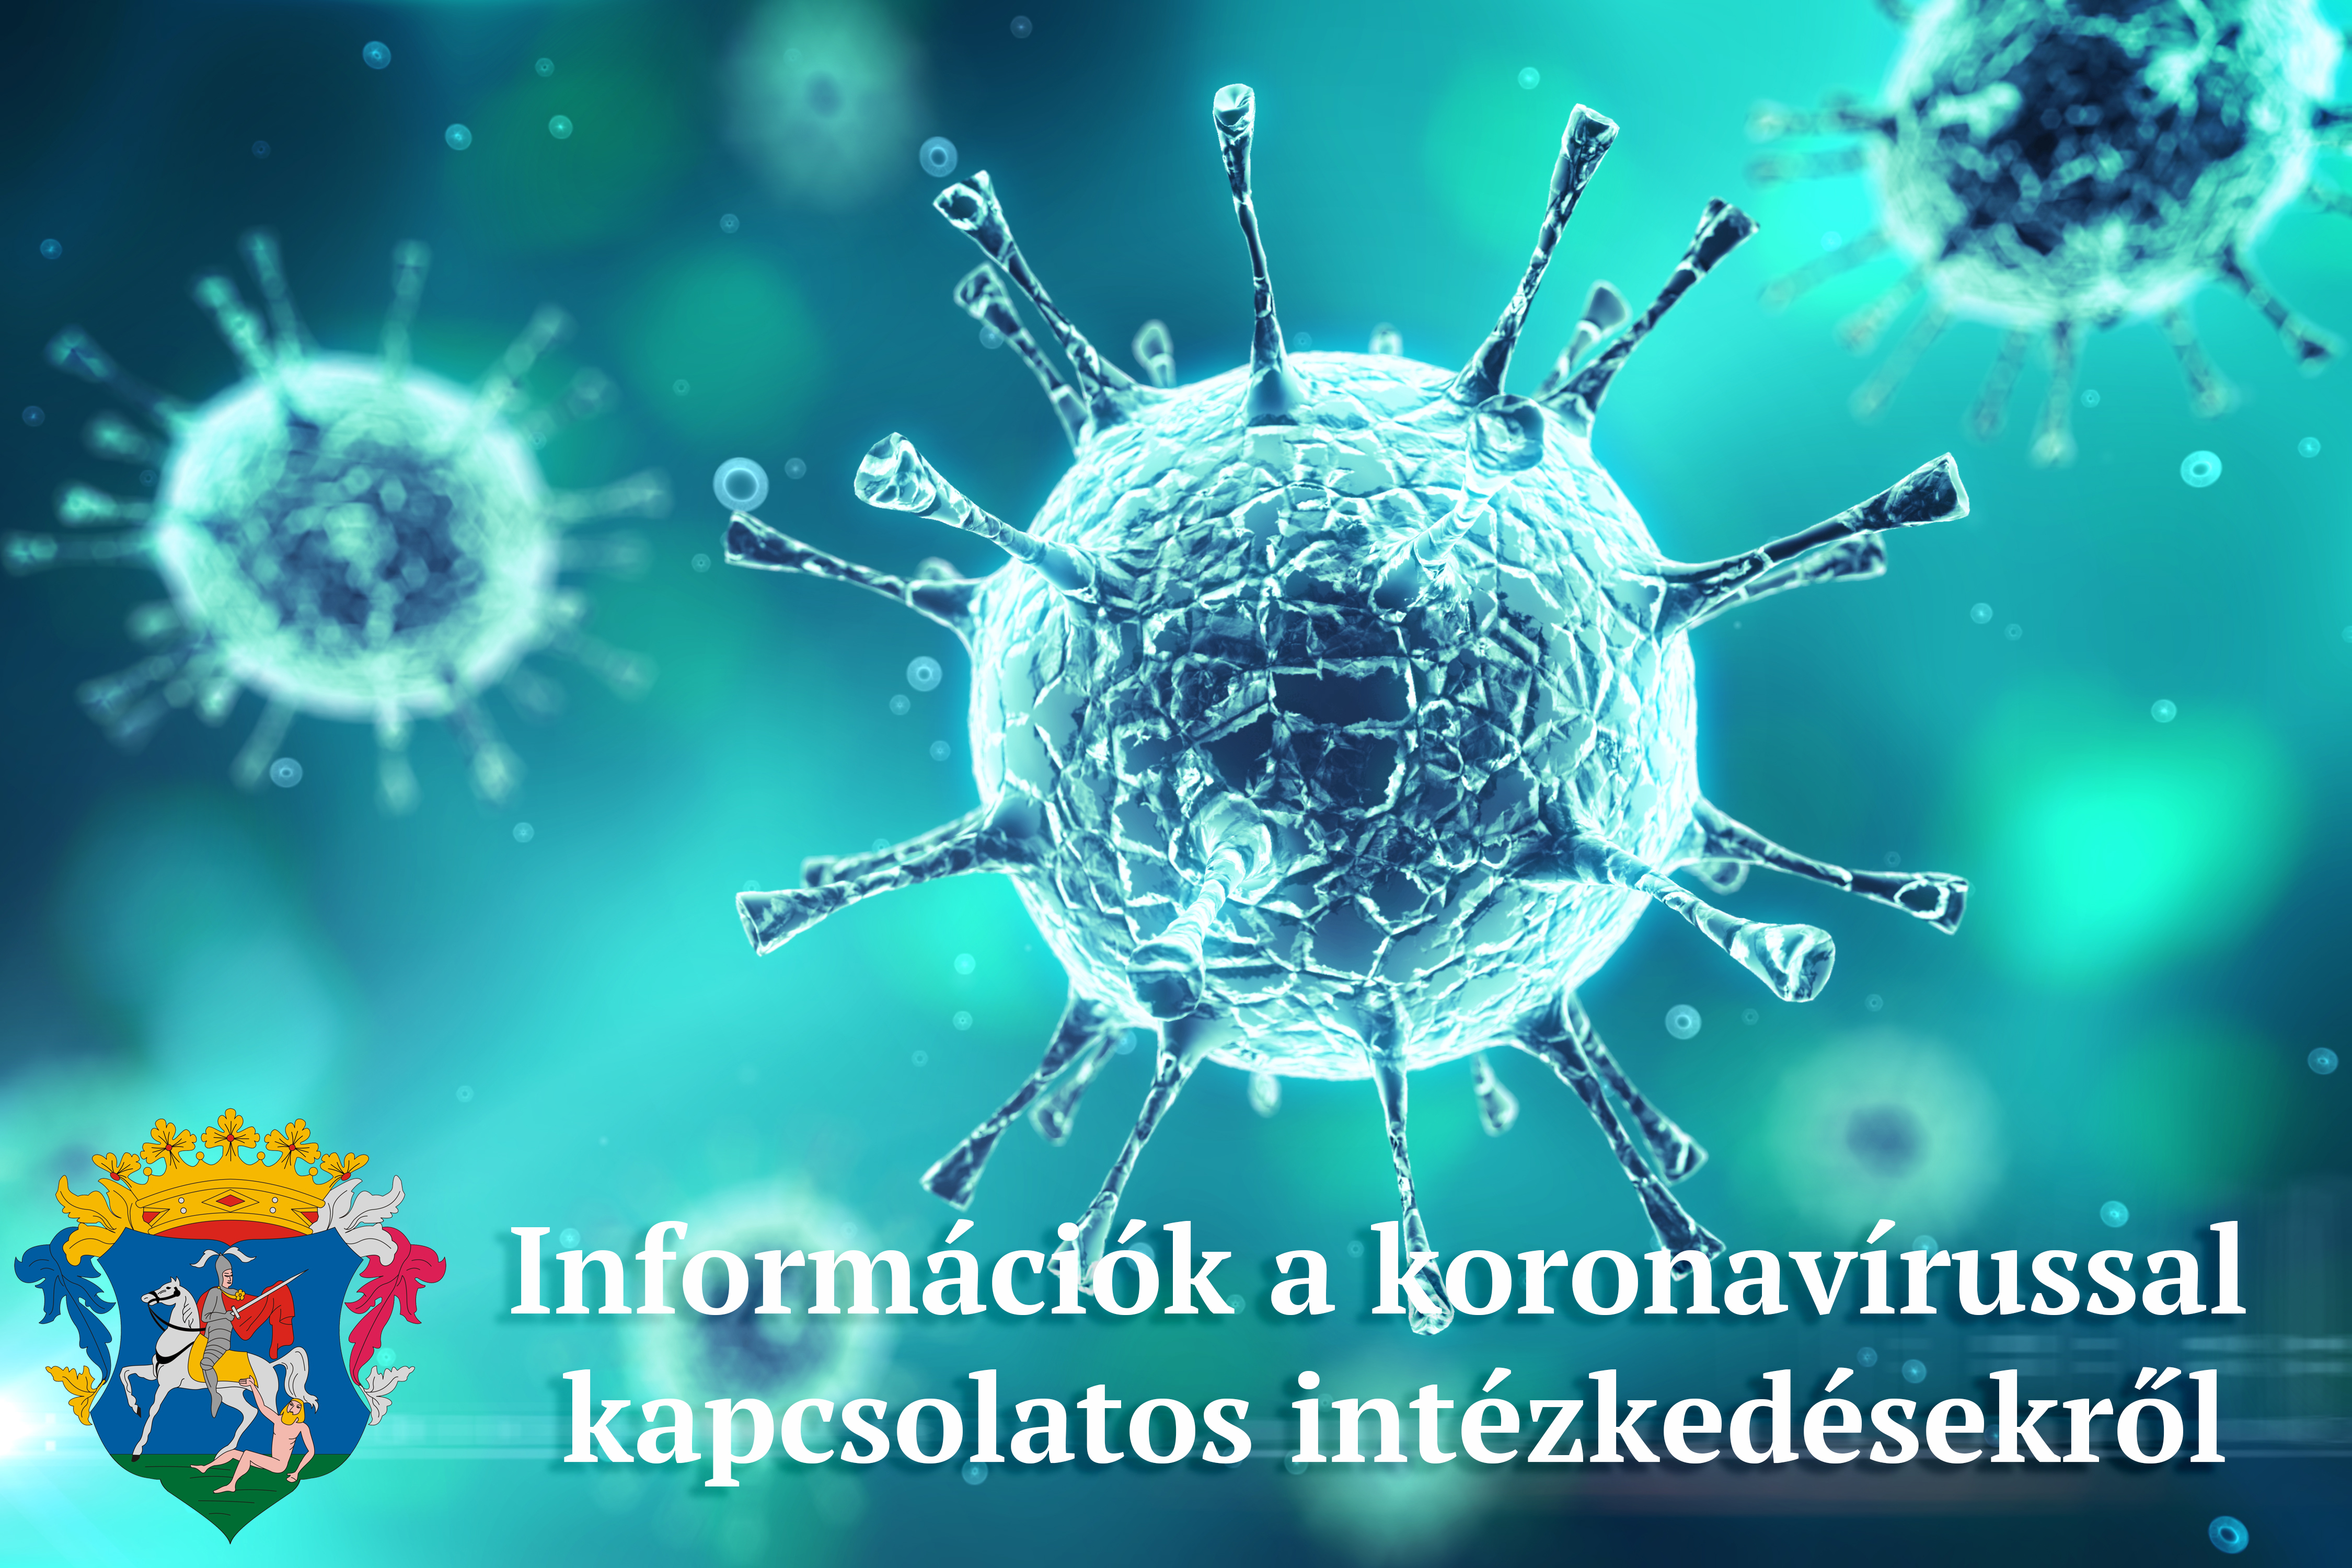 Információk a koronavírussal kapcsolatos intézkedésekről, döntésekről  (2020. OKTÓBER és 2021. JÚNIUS KÖZÖTT)